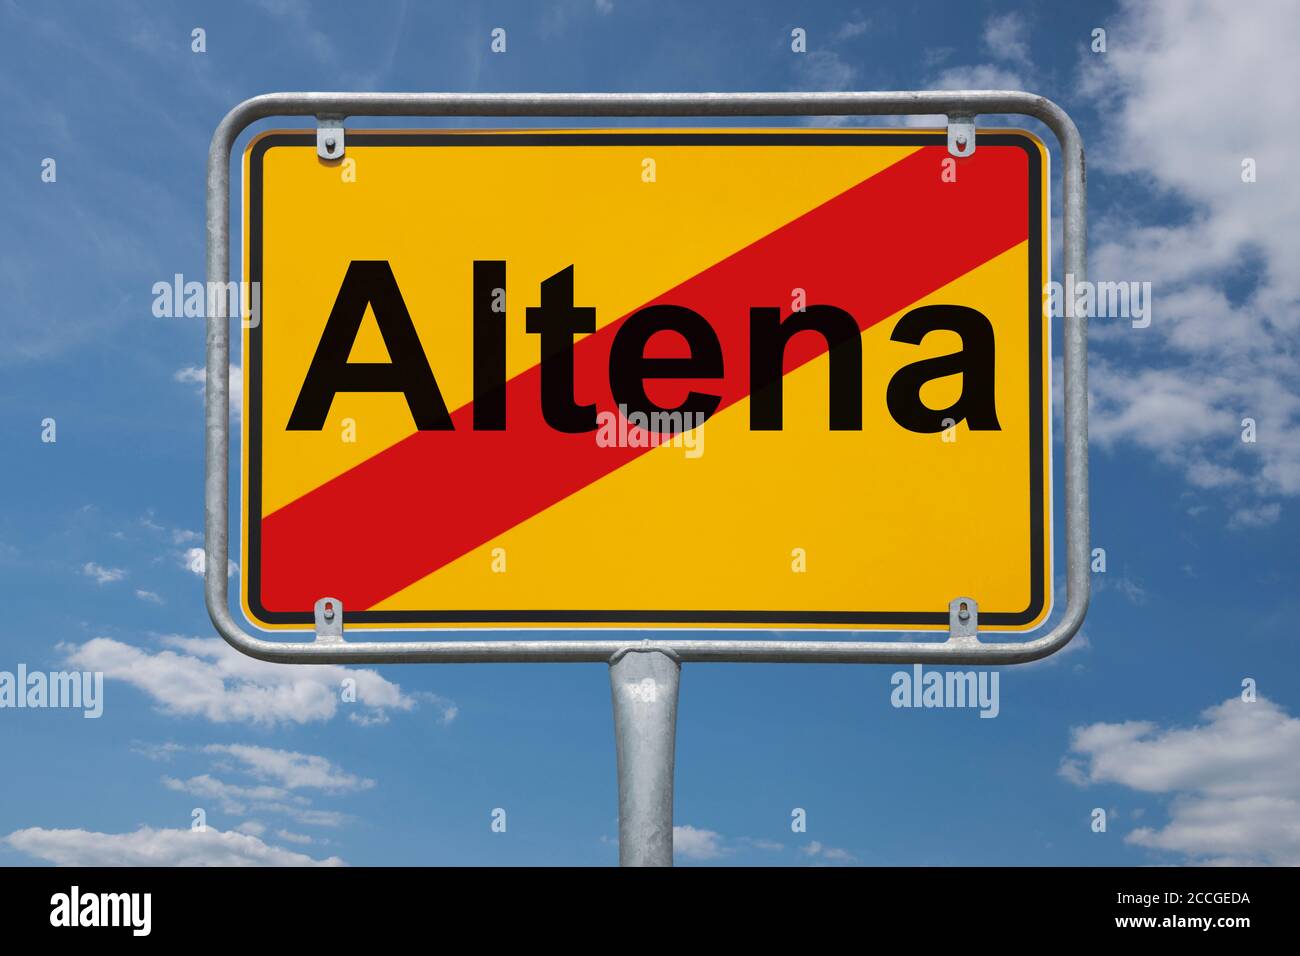 Ortstafel Altena, Nordrhein-Westfalen, Deutschland | Place name sign Altena, North Rhine-Westphalia, Germany, Europe Stock Photo